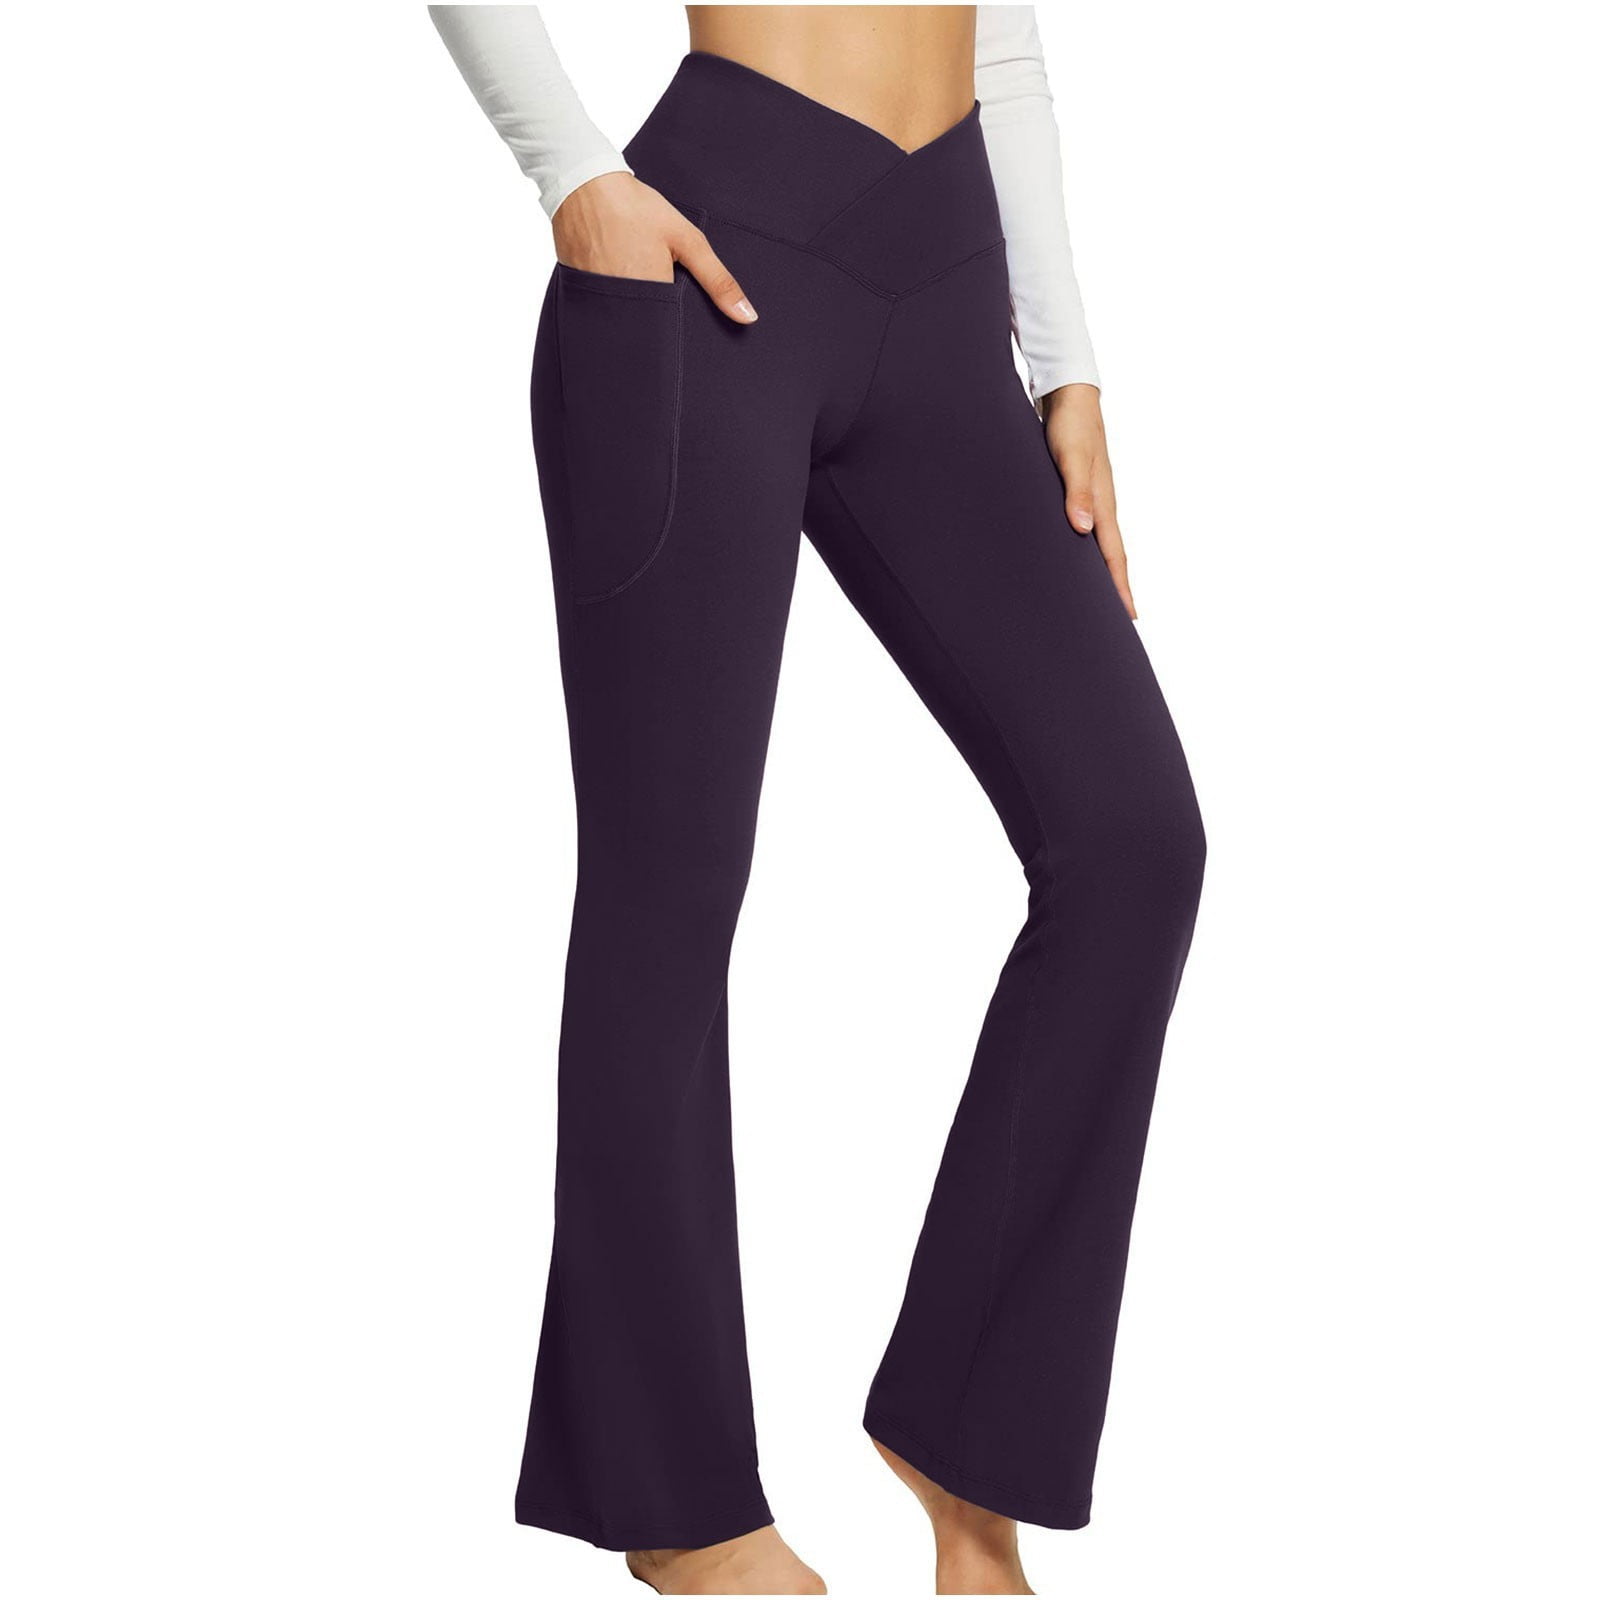 JDEFEG Straight Leg Yoga Pants for Women Petite Length Women